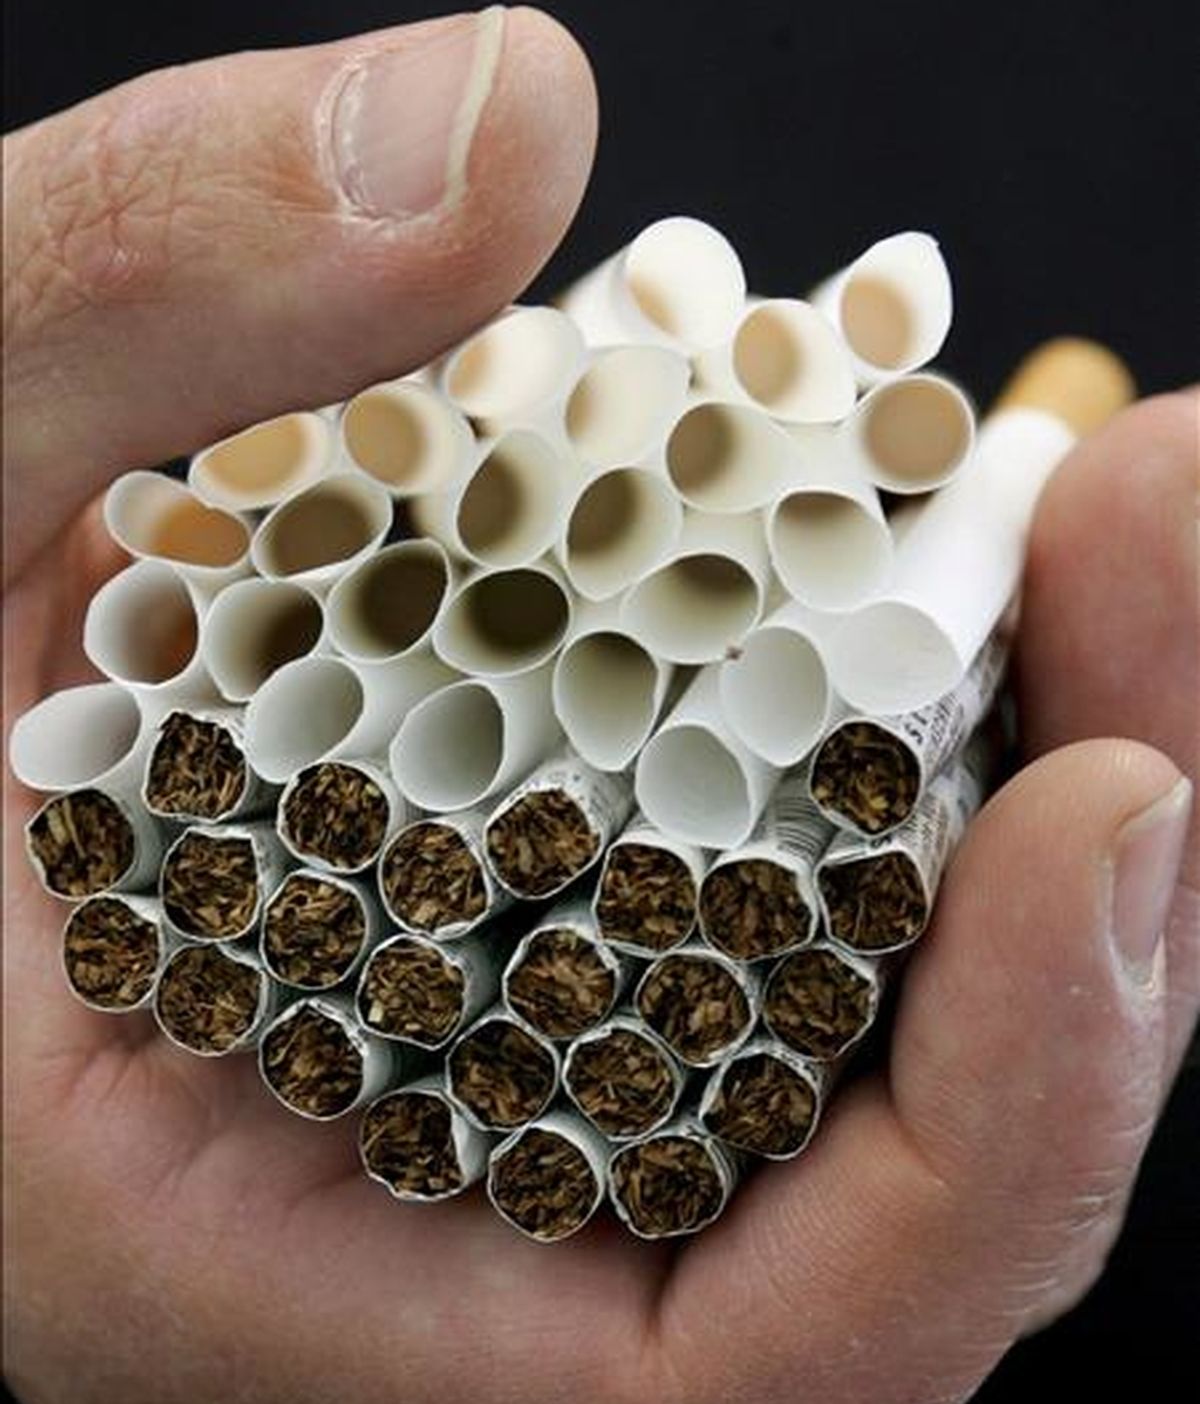 La mayor empresa tabaquera estadounidense dijo que de enero a junio de 2010 ganó 1.855 millones de dólares (89 centavos por acción), lo que supone un incremento del 16% respecto al año anterior. EFE/Archivo